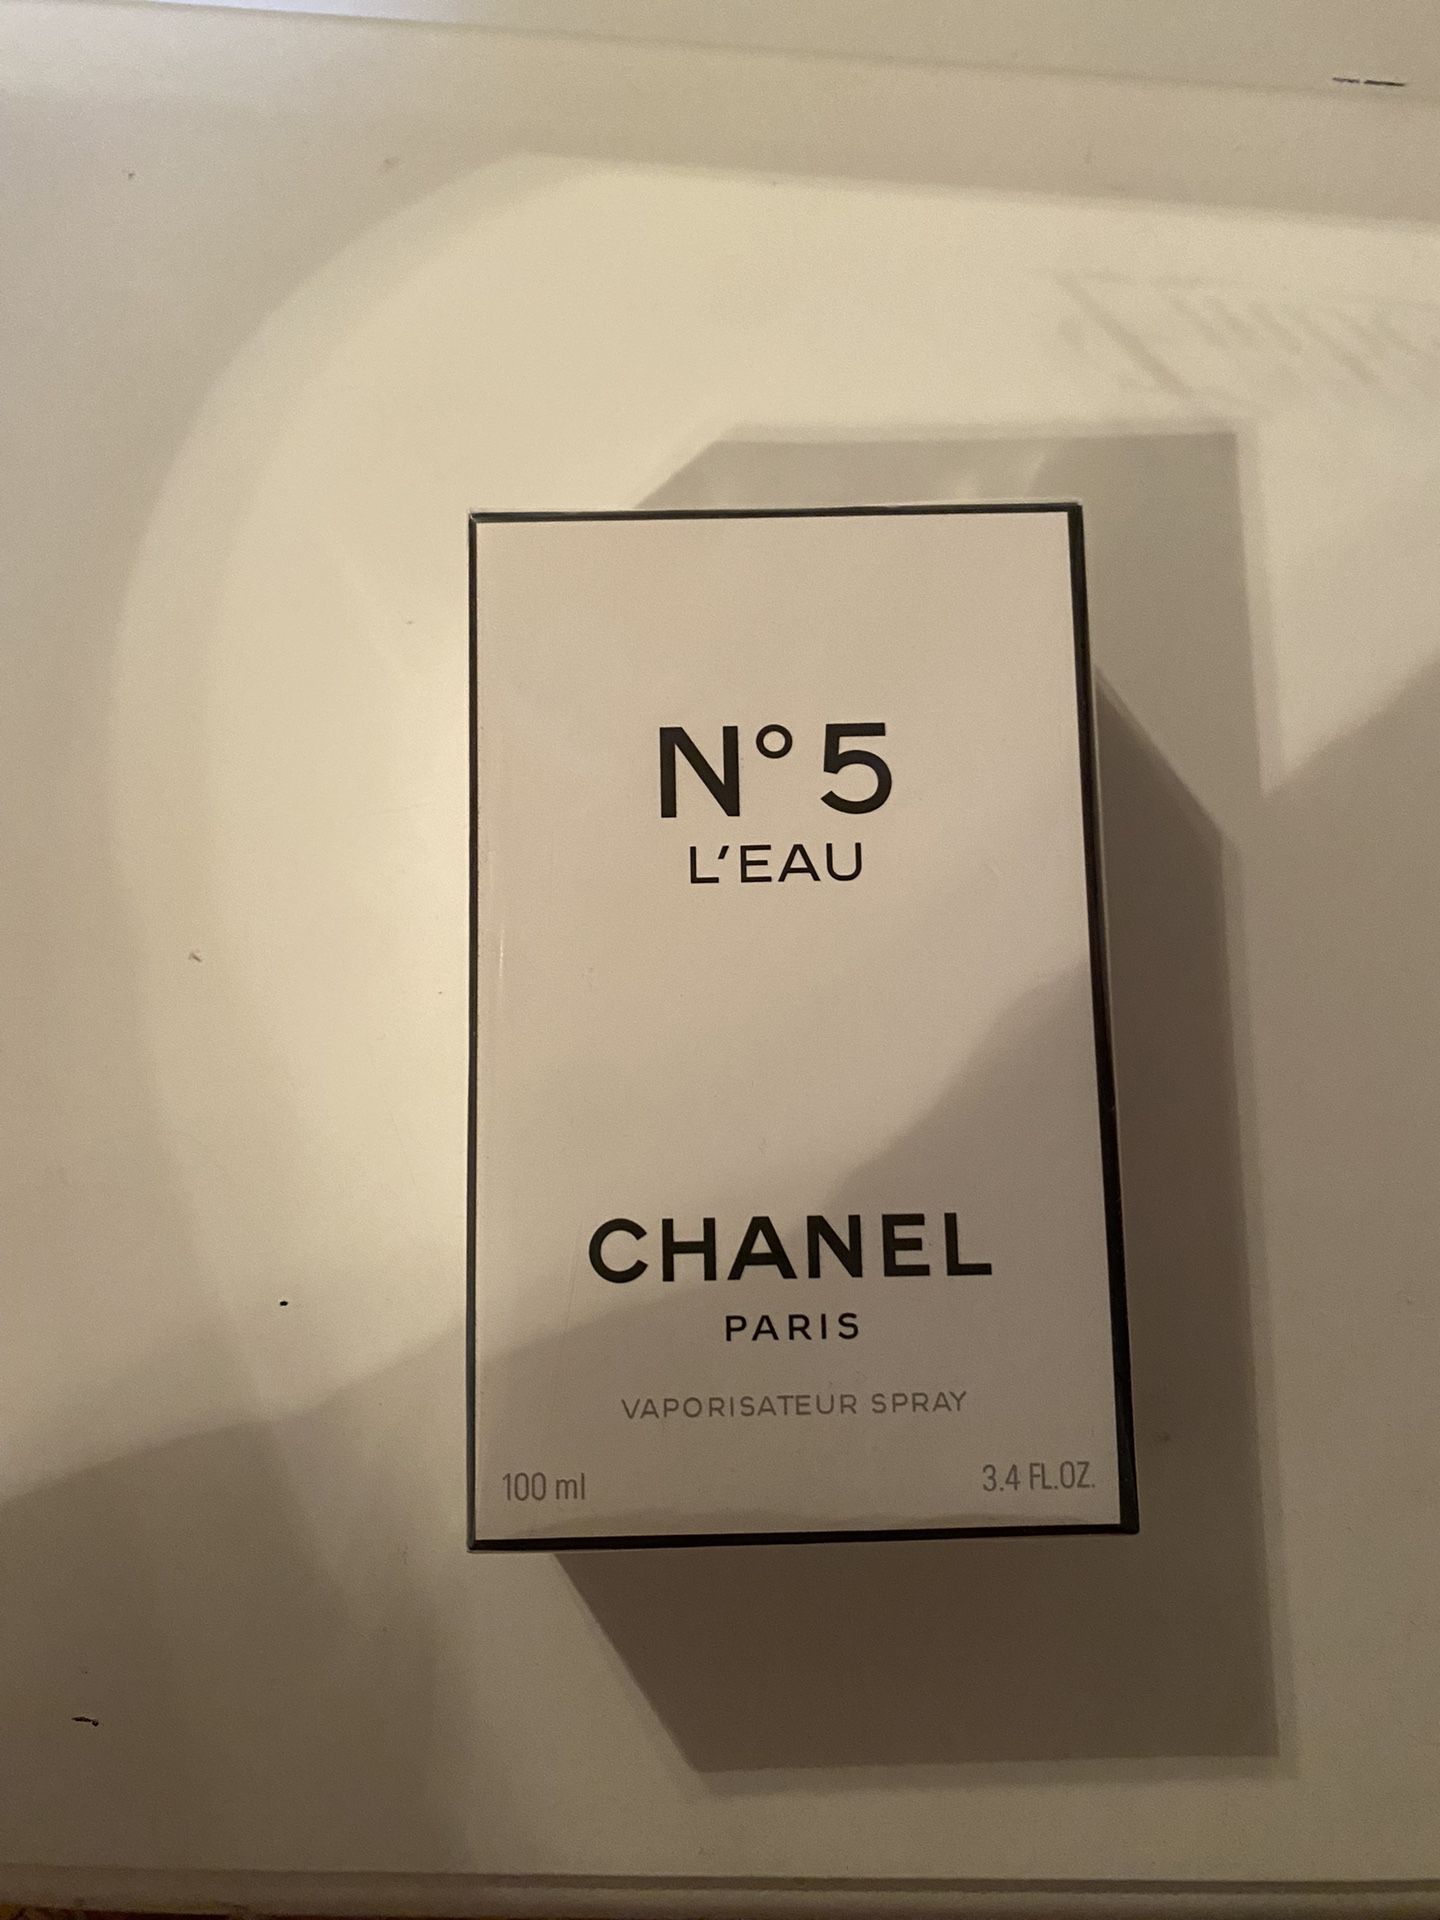 N 5  L’ EAU  Chanel  Paris  Eau De Toilrtte  3.4